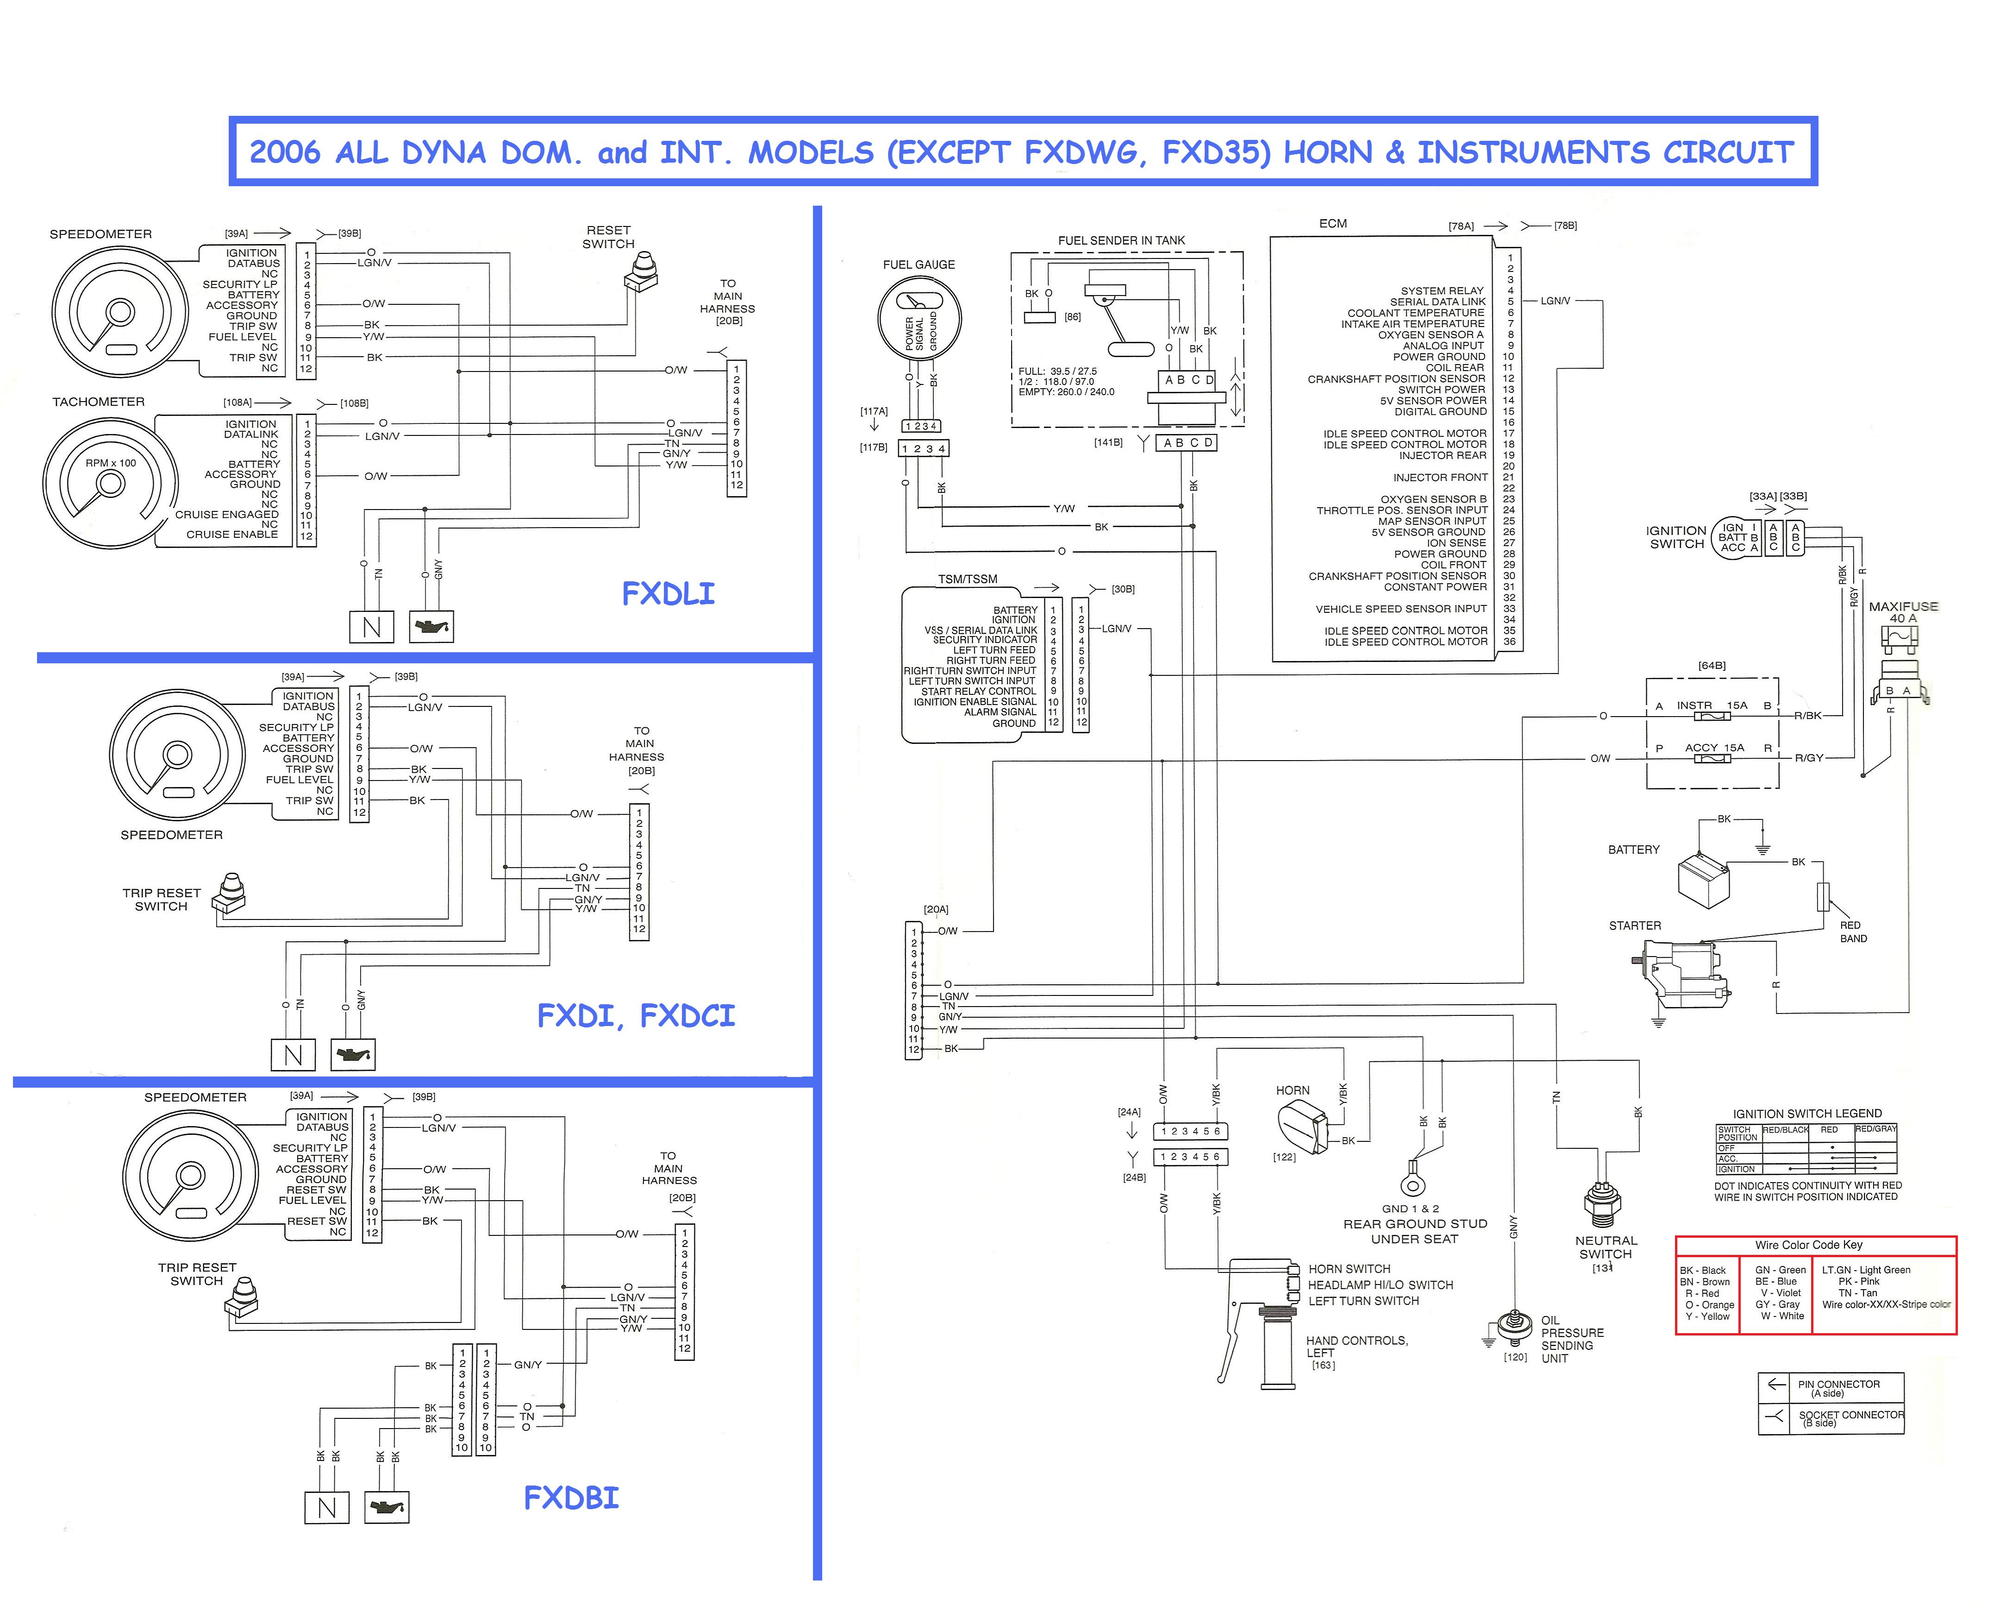 keyed tumbler wiring diagram